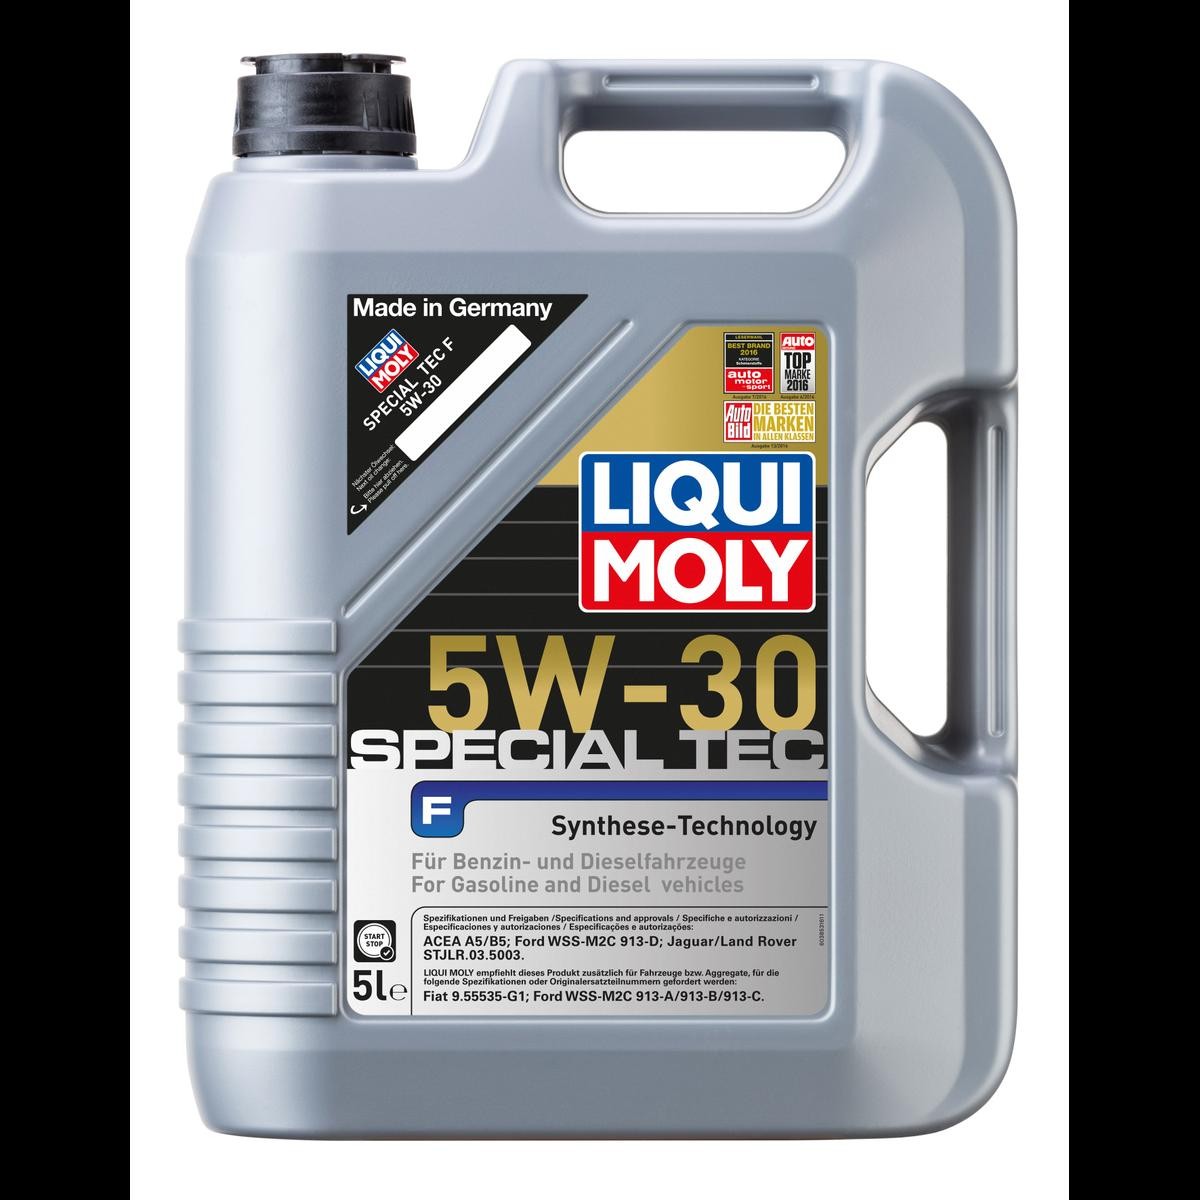 1 x 5 L Liters Liqui Moly 5W-30 Top Tec 4200 buy cheap!